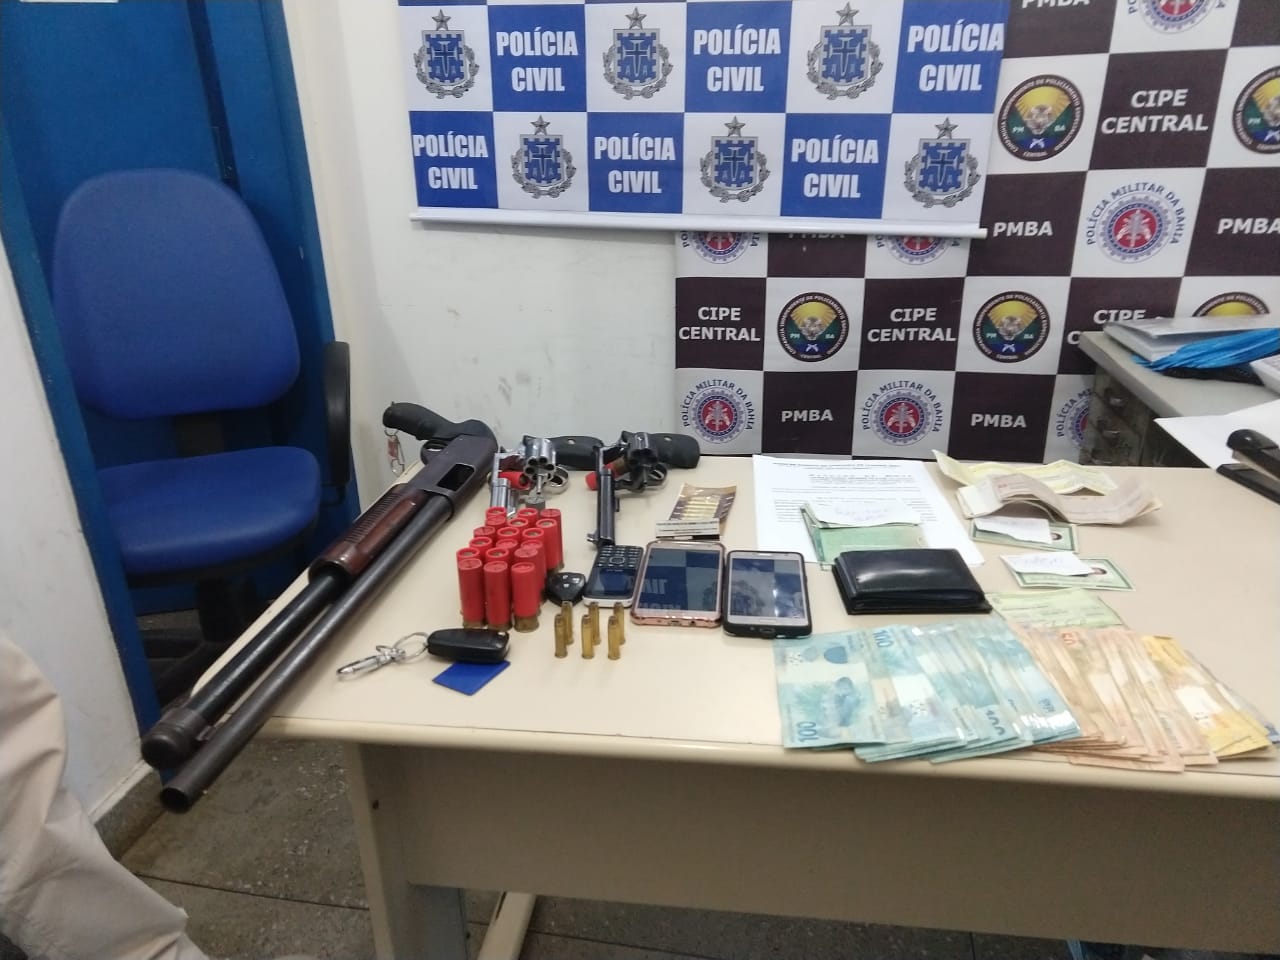 Ciganos são presos com 18 mil reais e armas durante operação nesta quinta-feira (19)